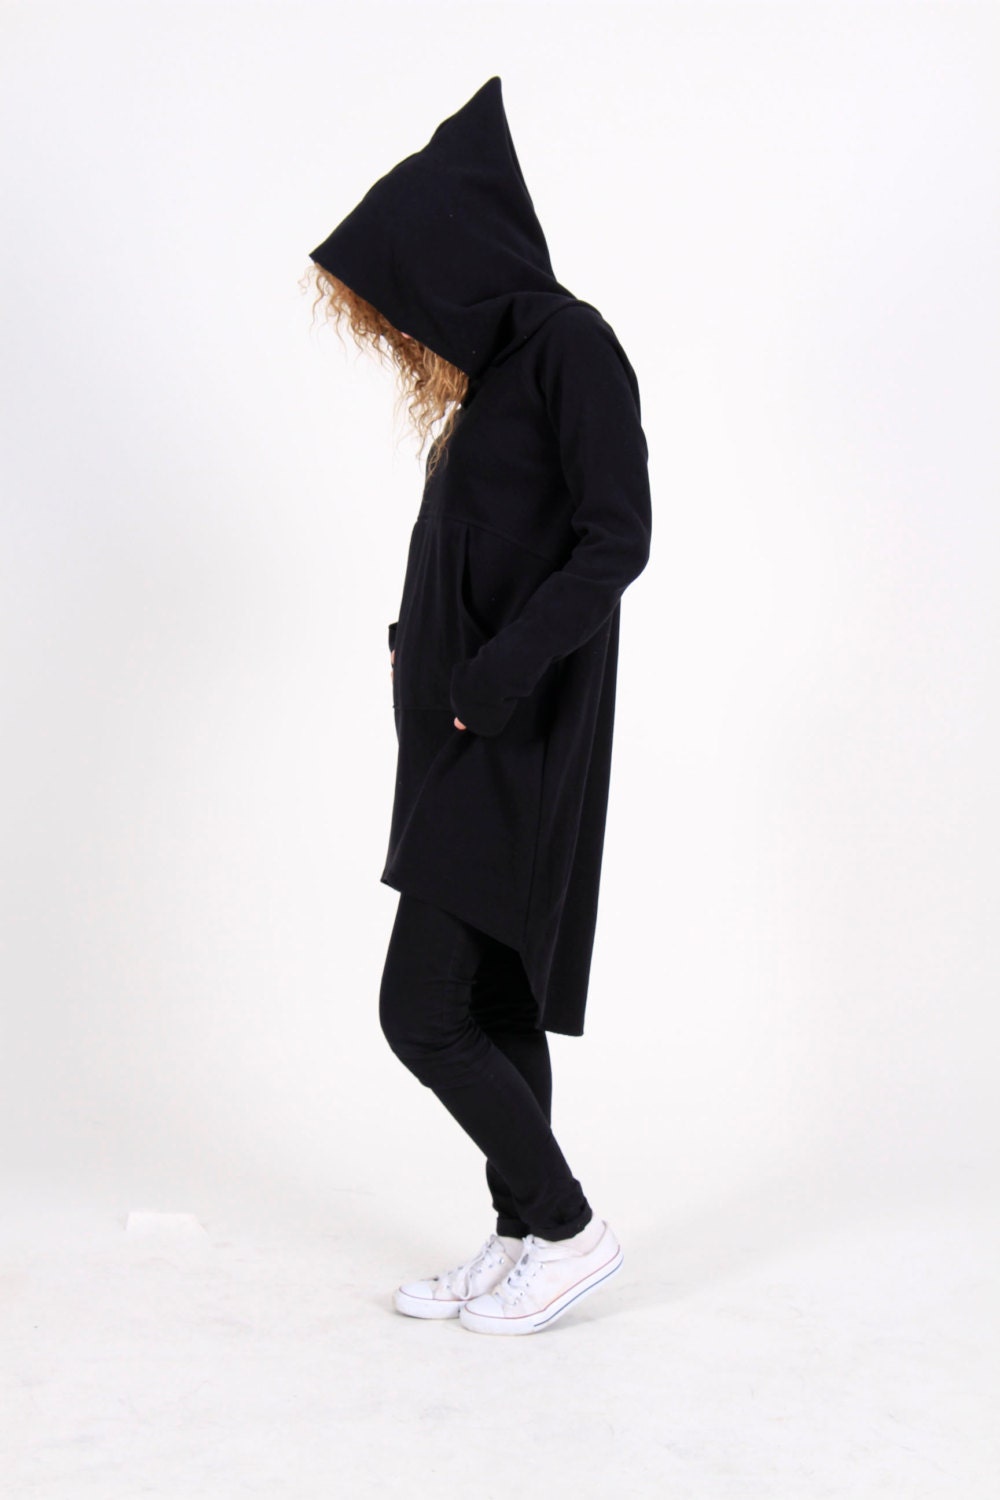 Hoodie Dress Sweatshirt Dress Black Hoodie Dress Sweater - Etsy